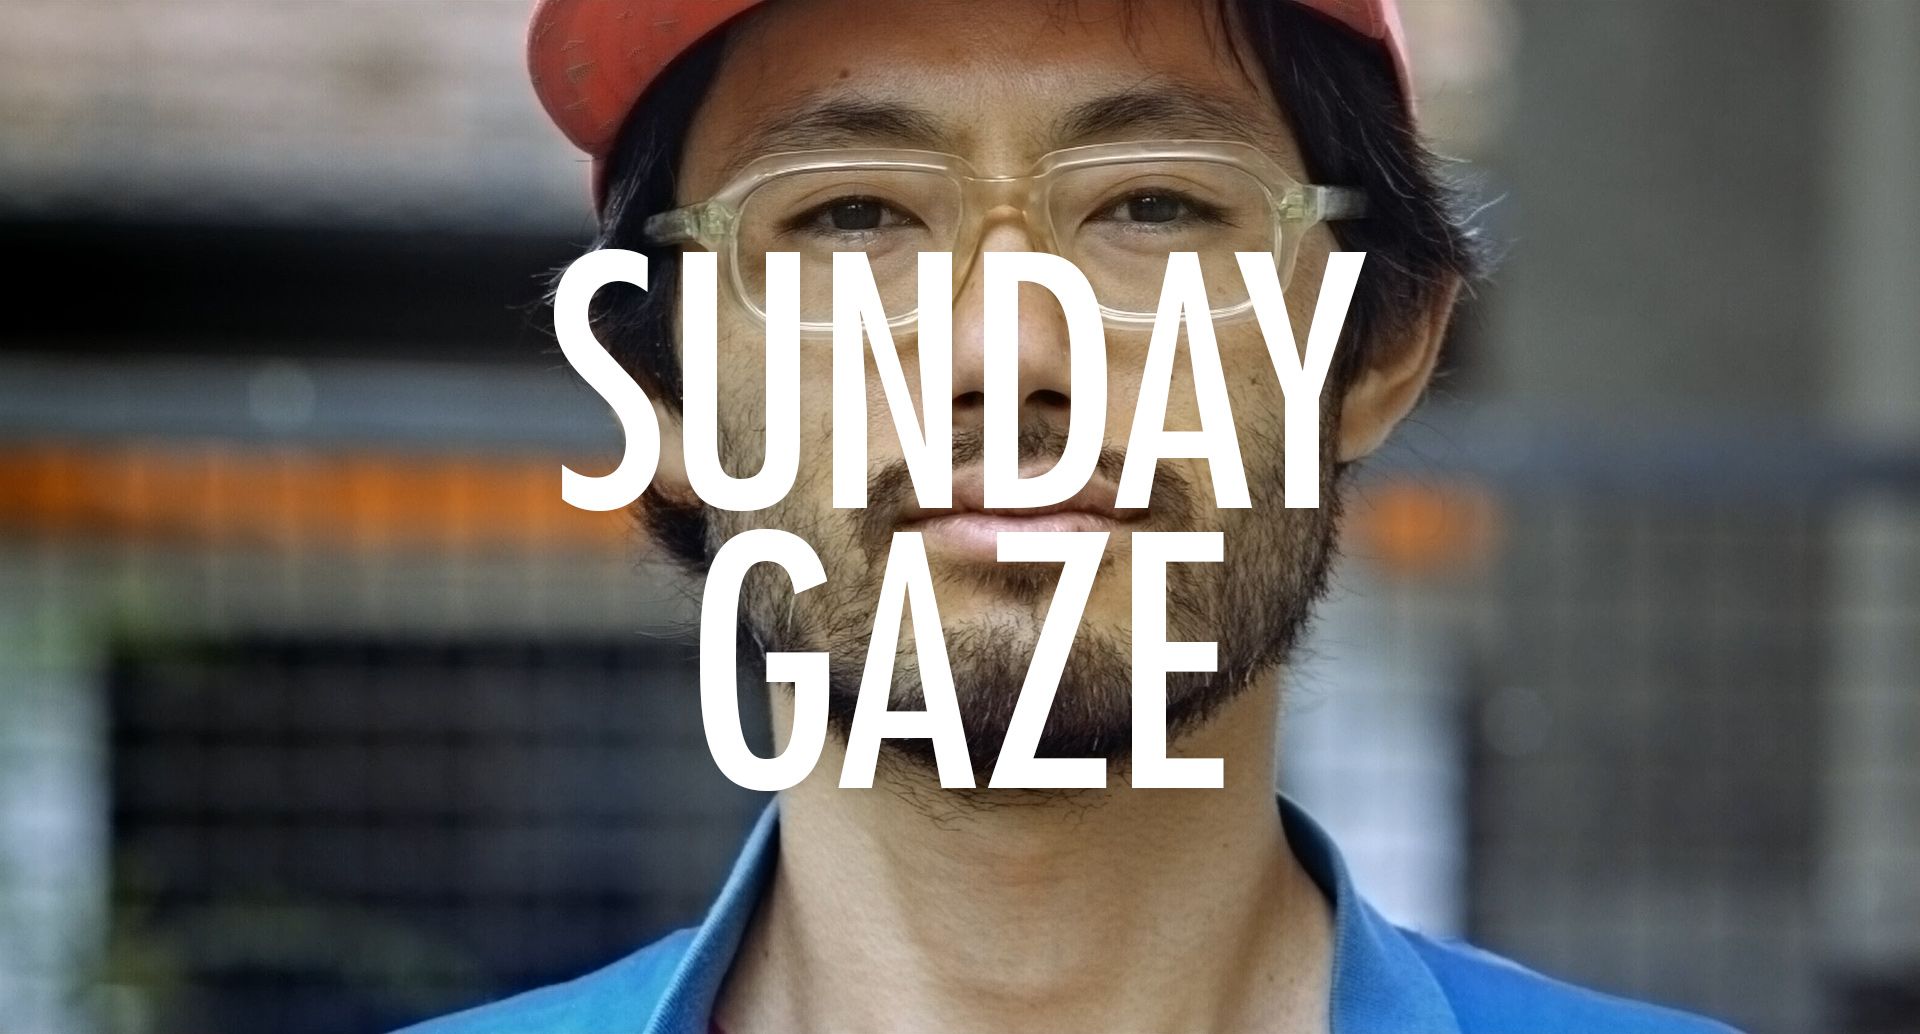 Sunday Gaze